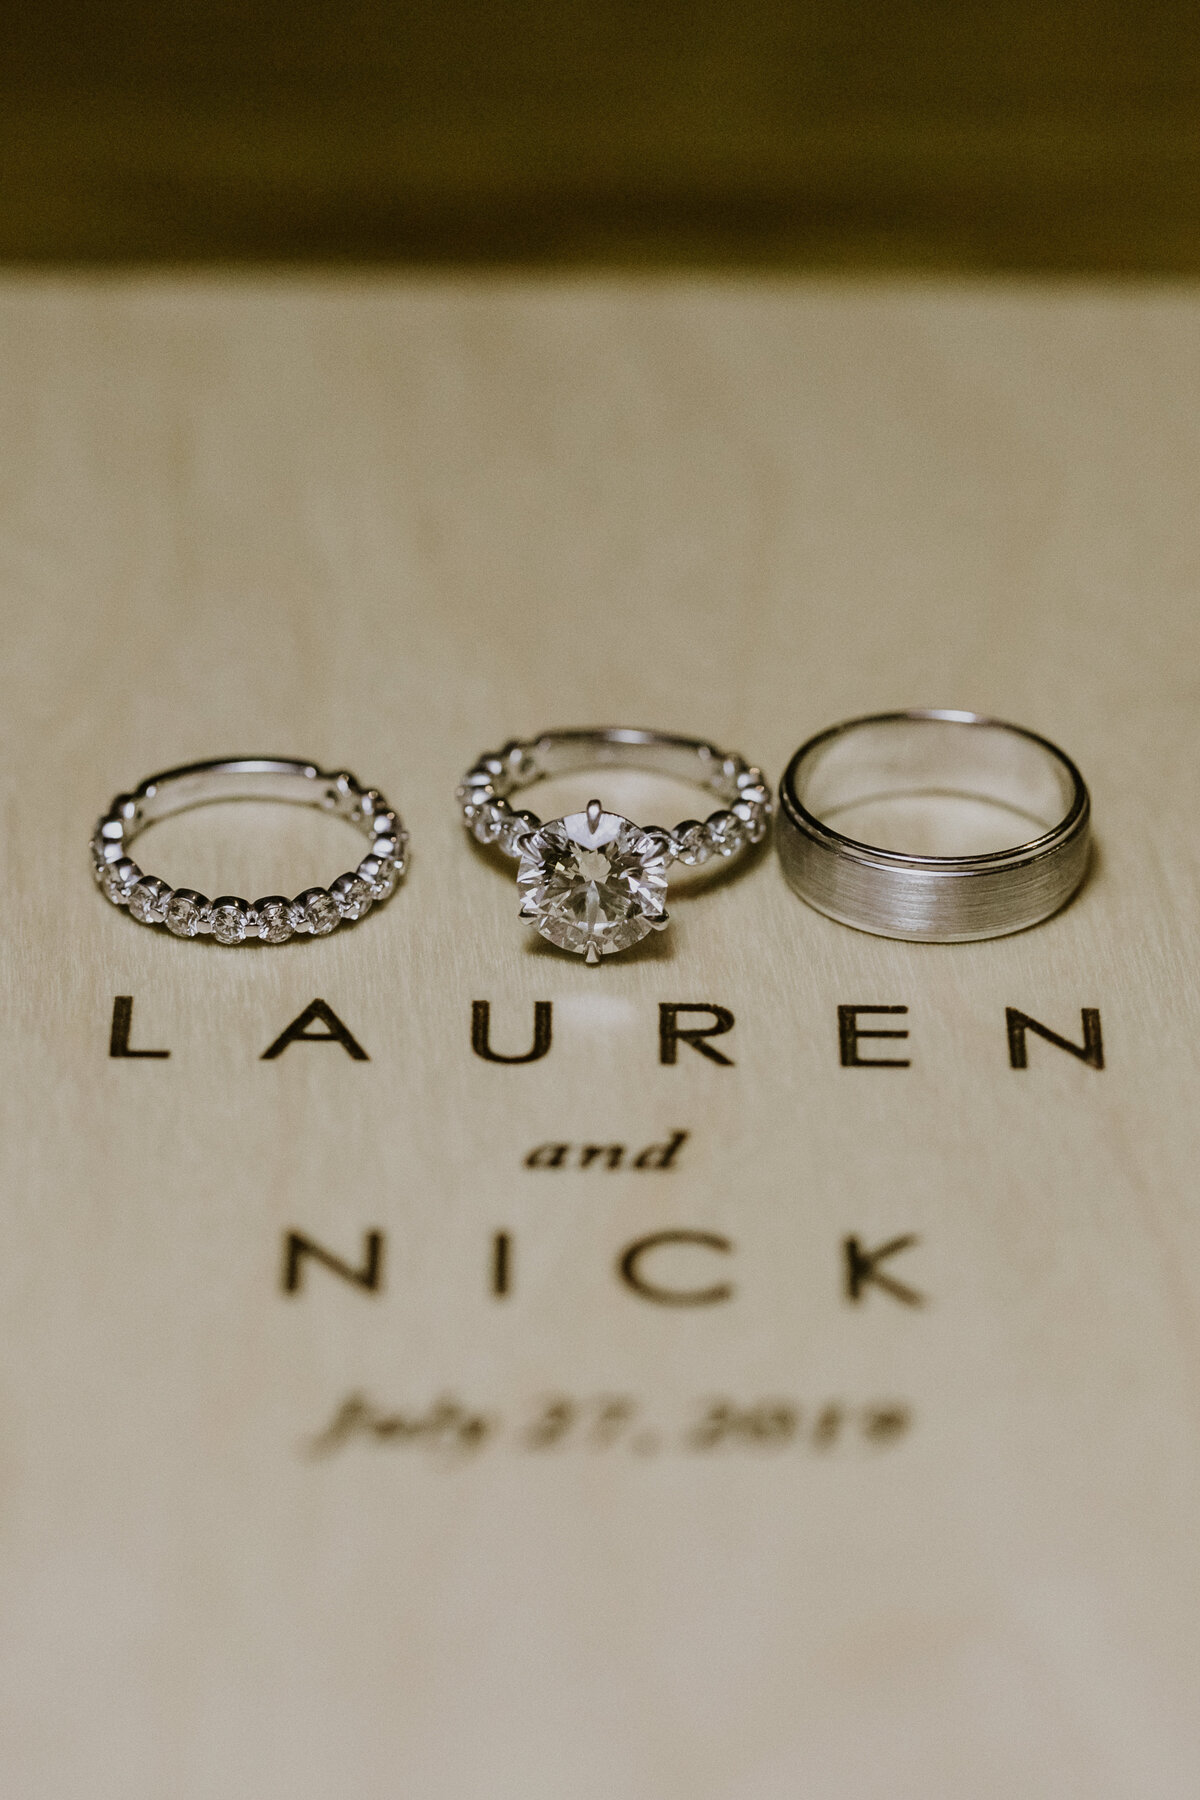 LAUREN+NICK-WEDDING2019-811